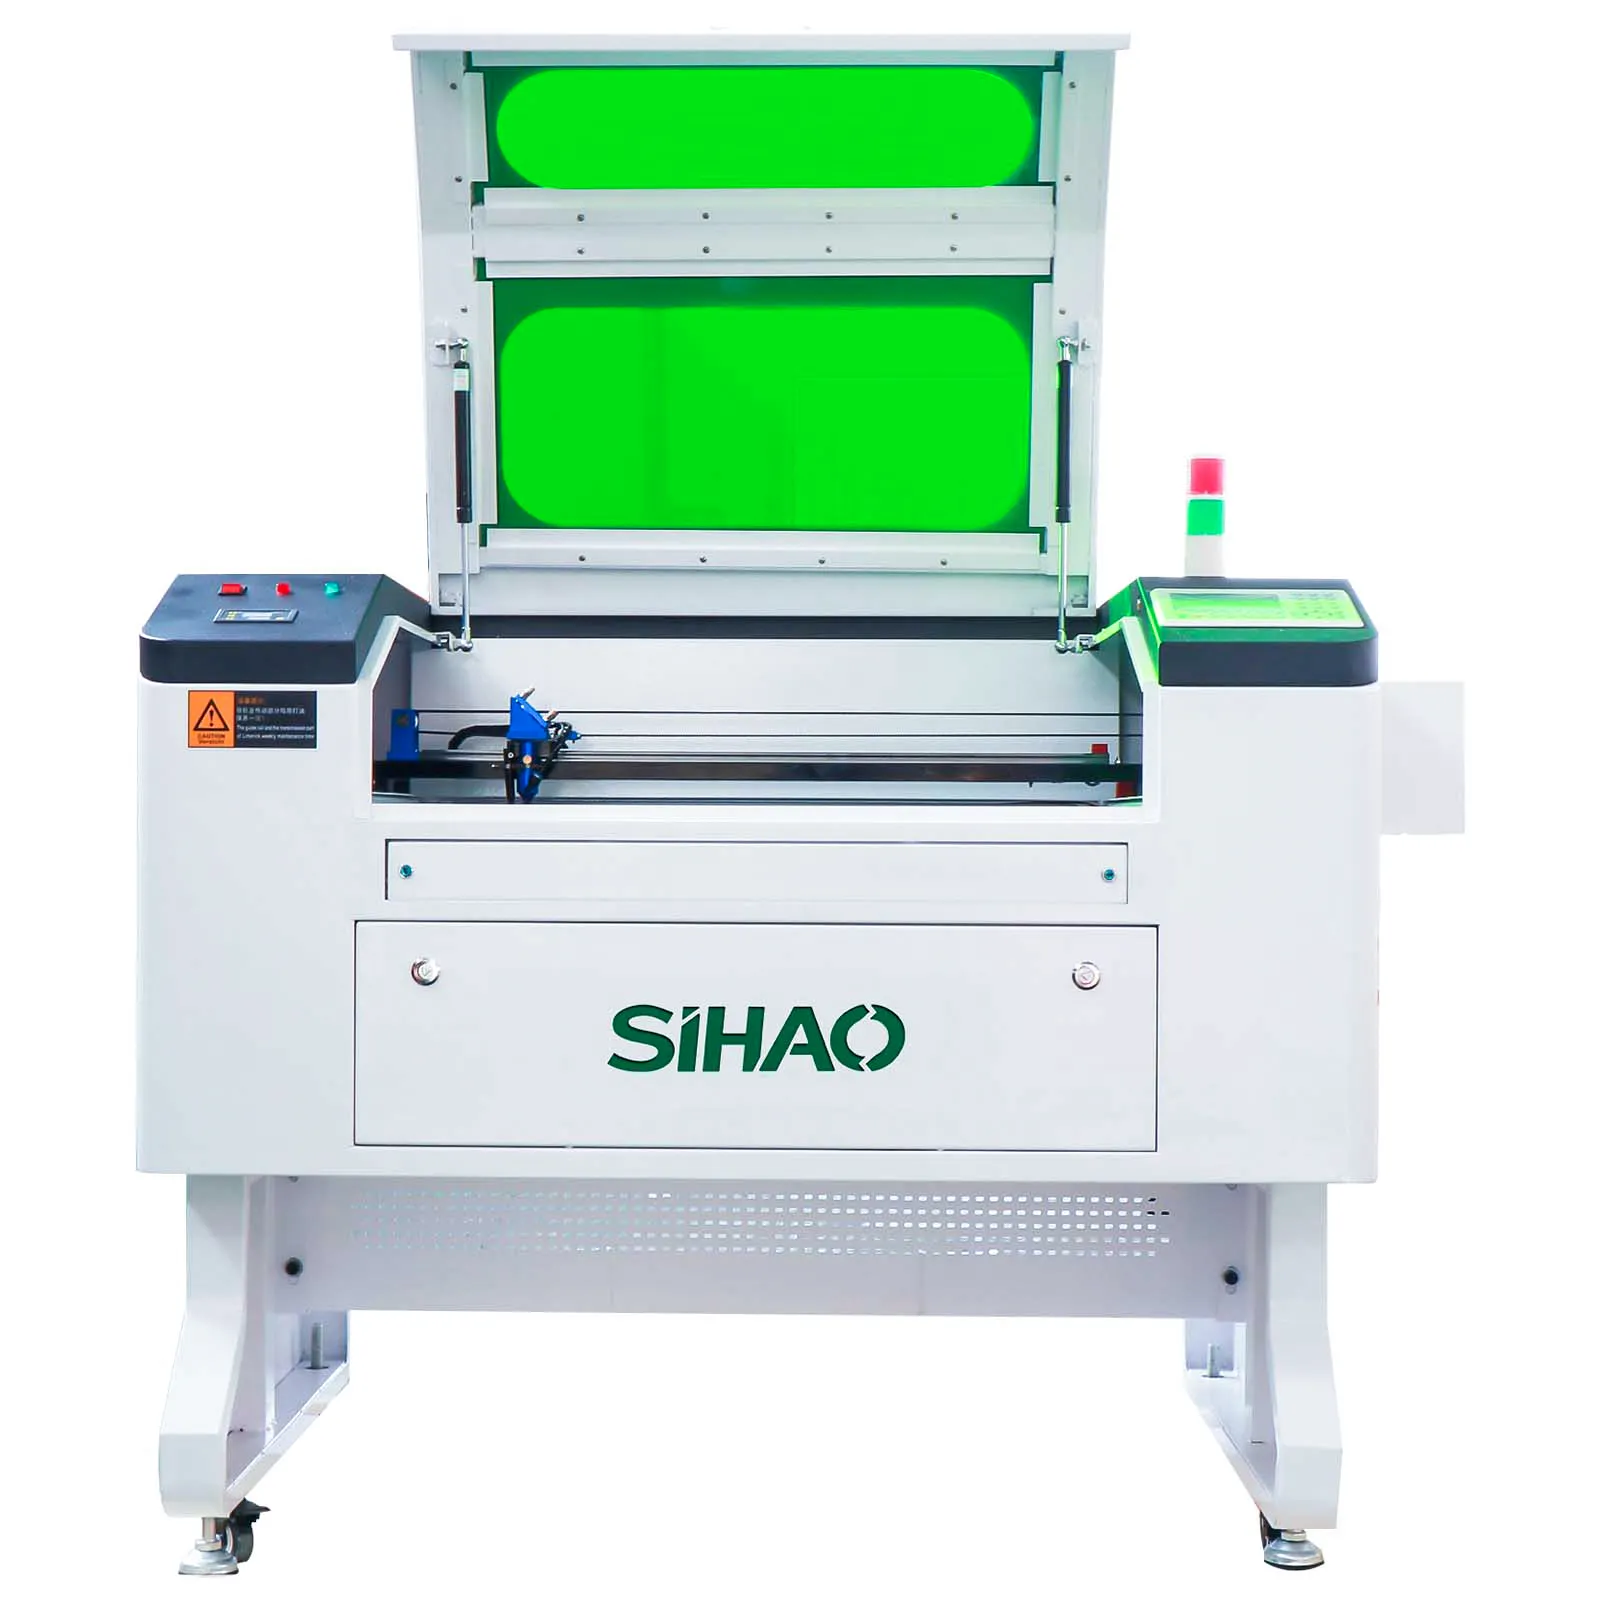 SIHAO KH-7050 kırmızı ışık yardımcı konumlandırma dahili co2 lazer kesme makinesi 3d kristal kontrplak taş lazer oyma makinesi